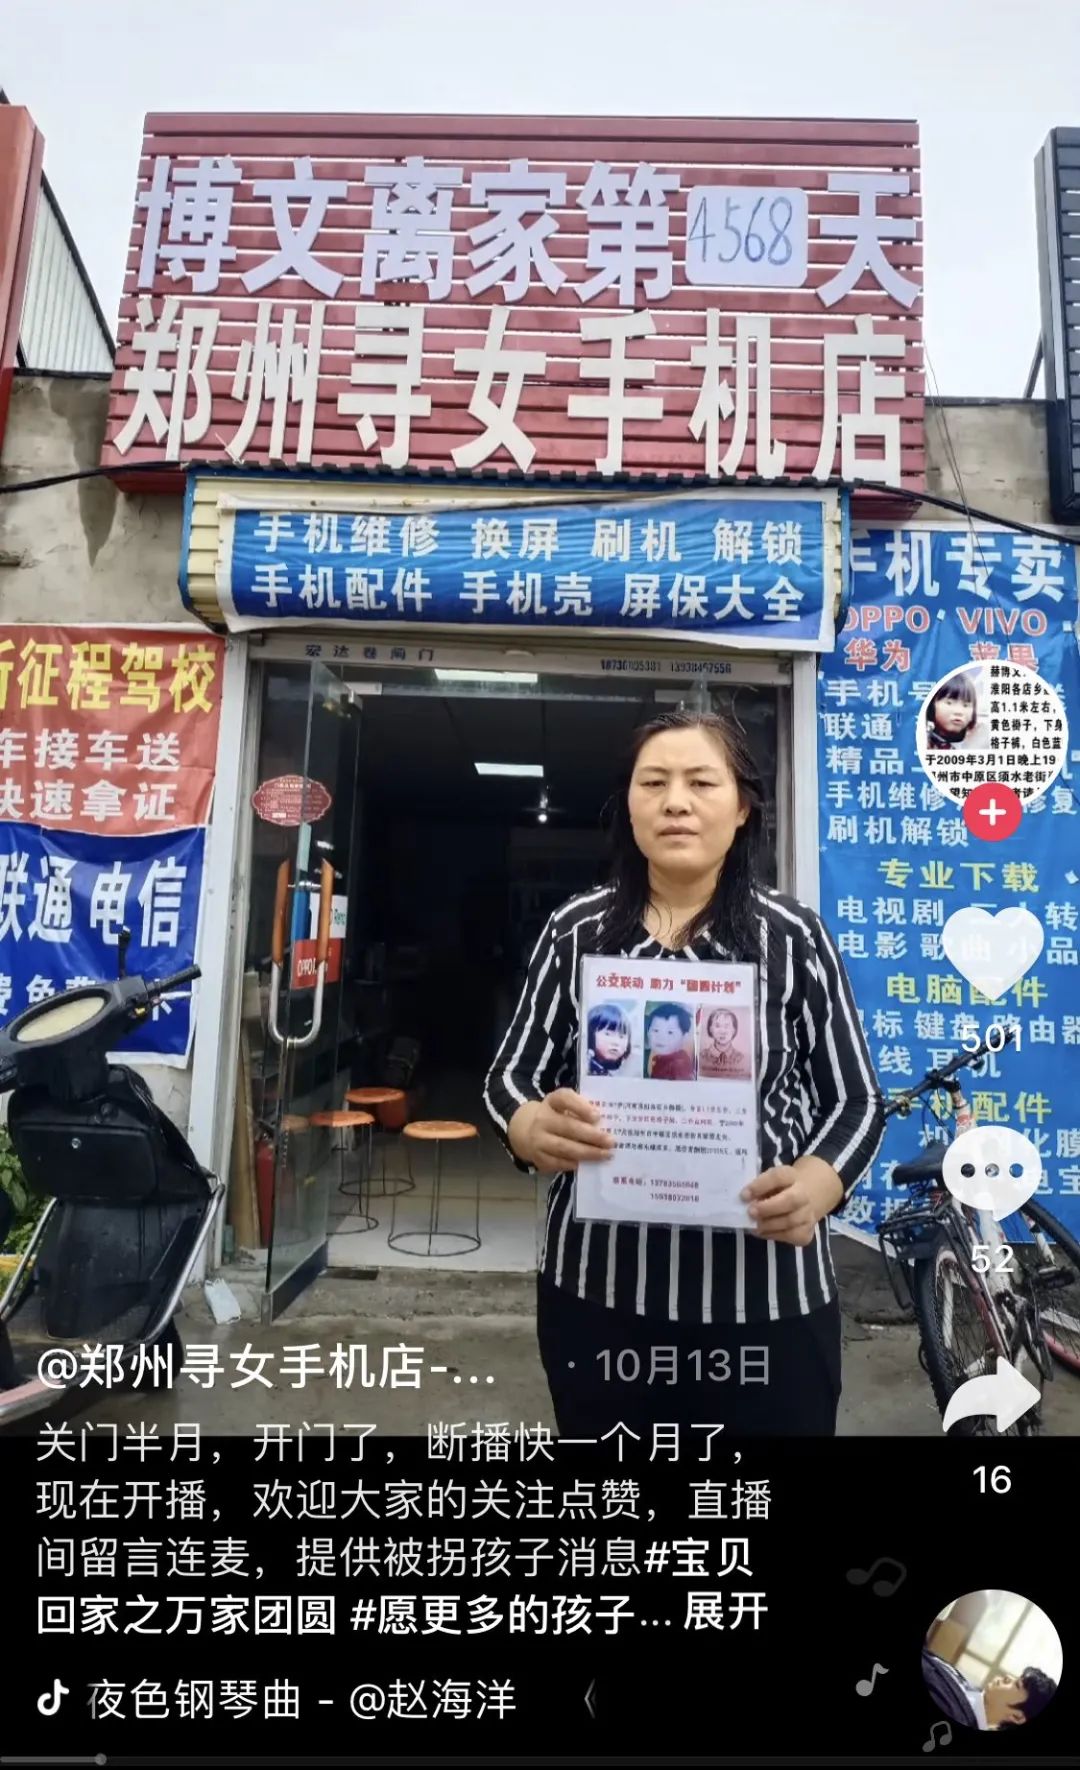 ▲卢丽手拿着寻人启事录制寻亲短视频，身后是“郑州寻女手机店”。受访者供图